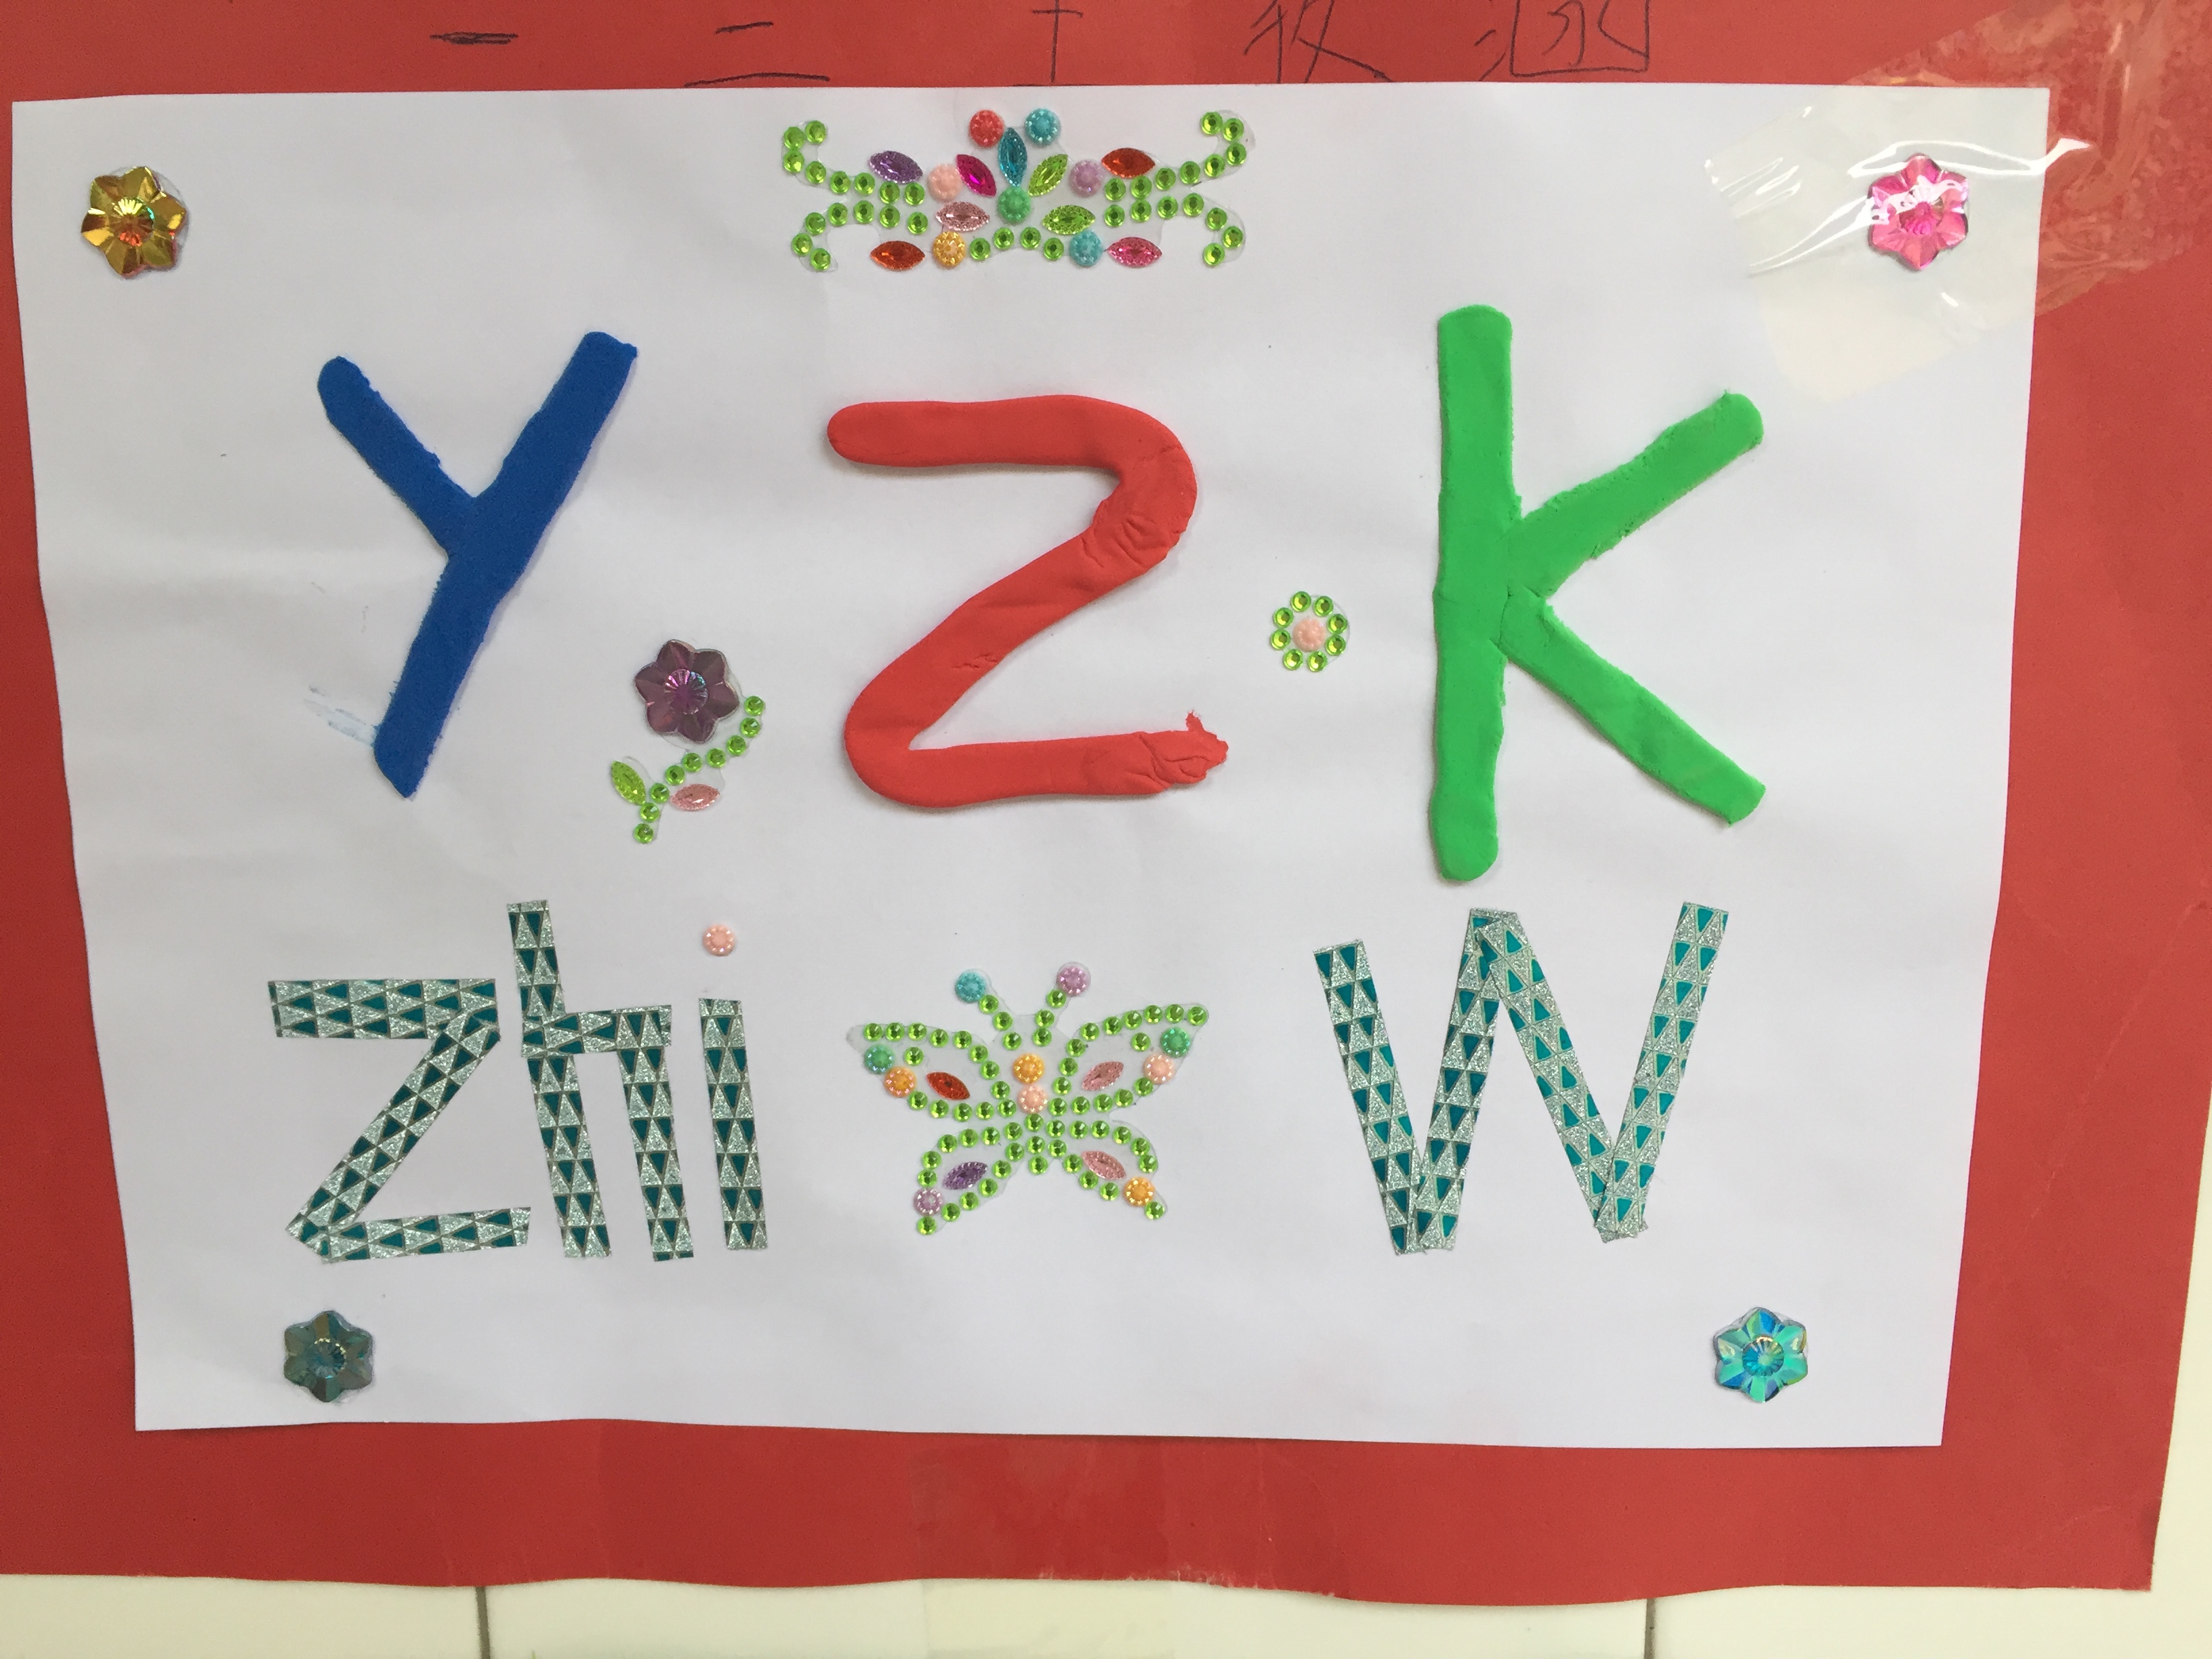 长江东路小学一年级近日筹备举行了拼音字母创意小报制作活动